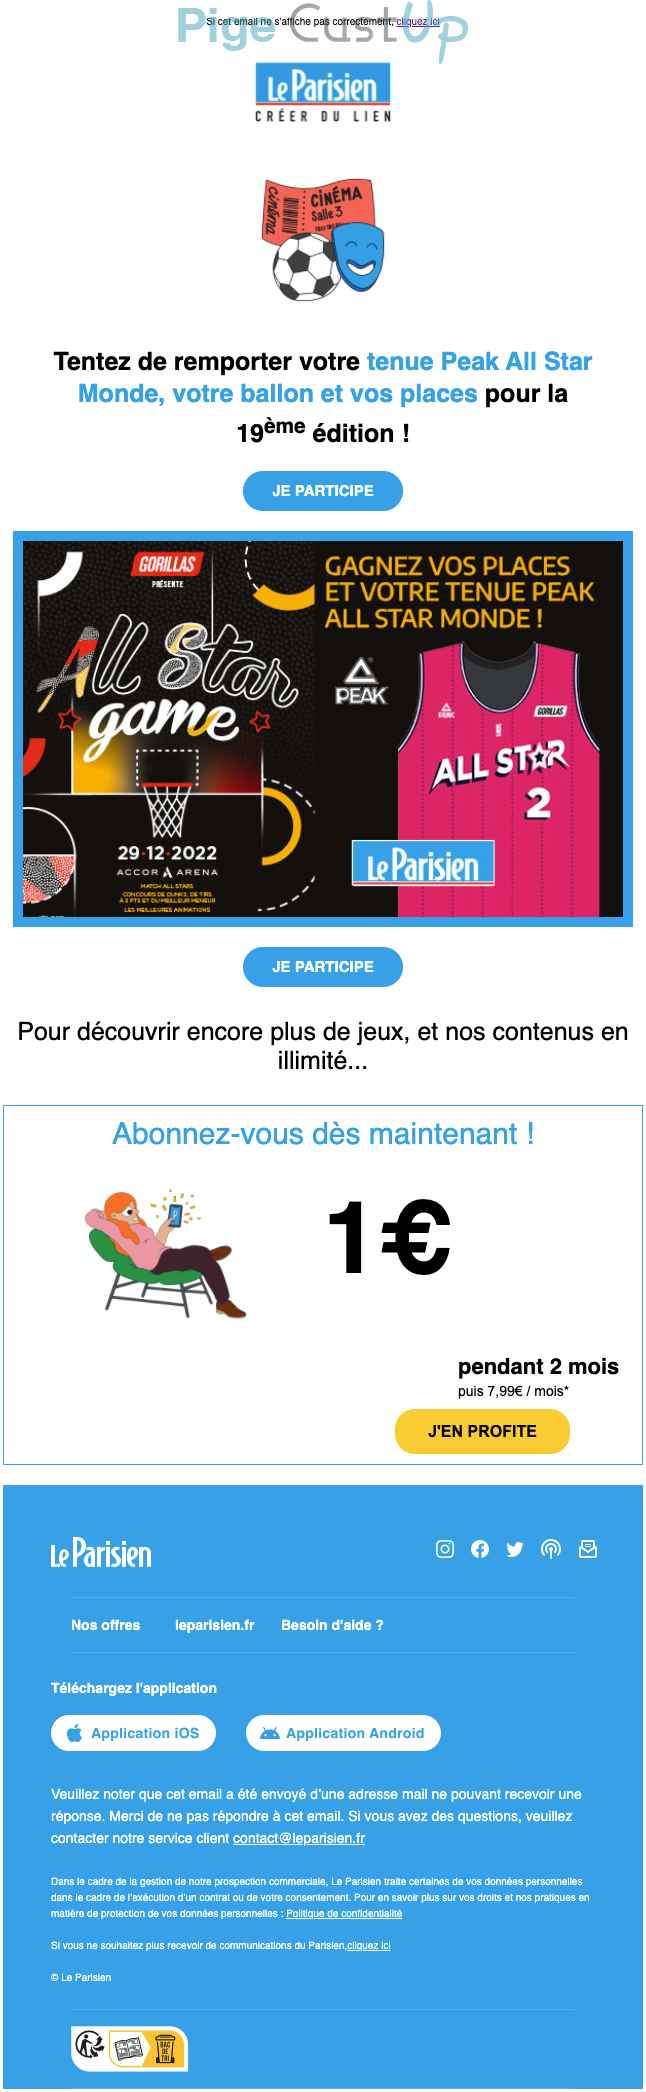 Exemple de Type de media  e-mailing - Le Parisien - Marketing Acquisition - Jeu promo